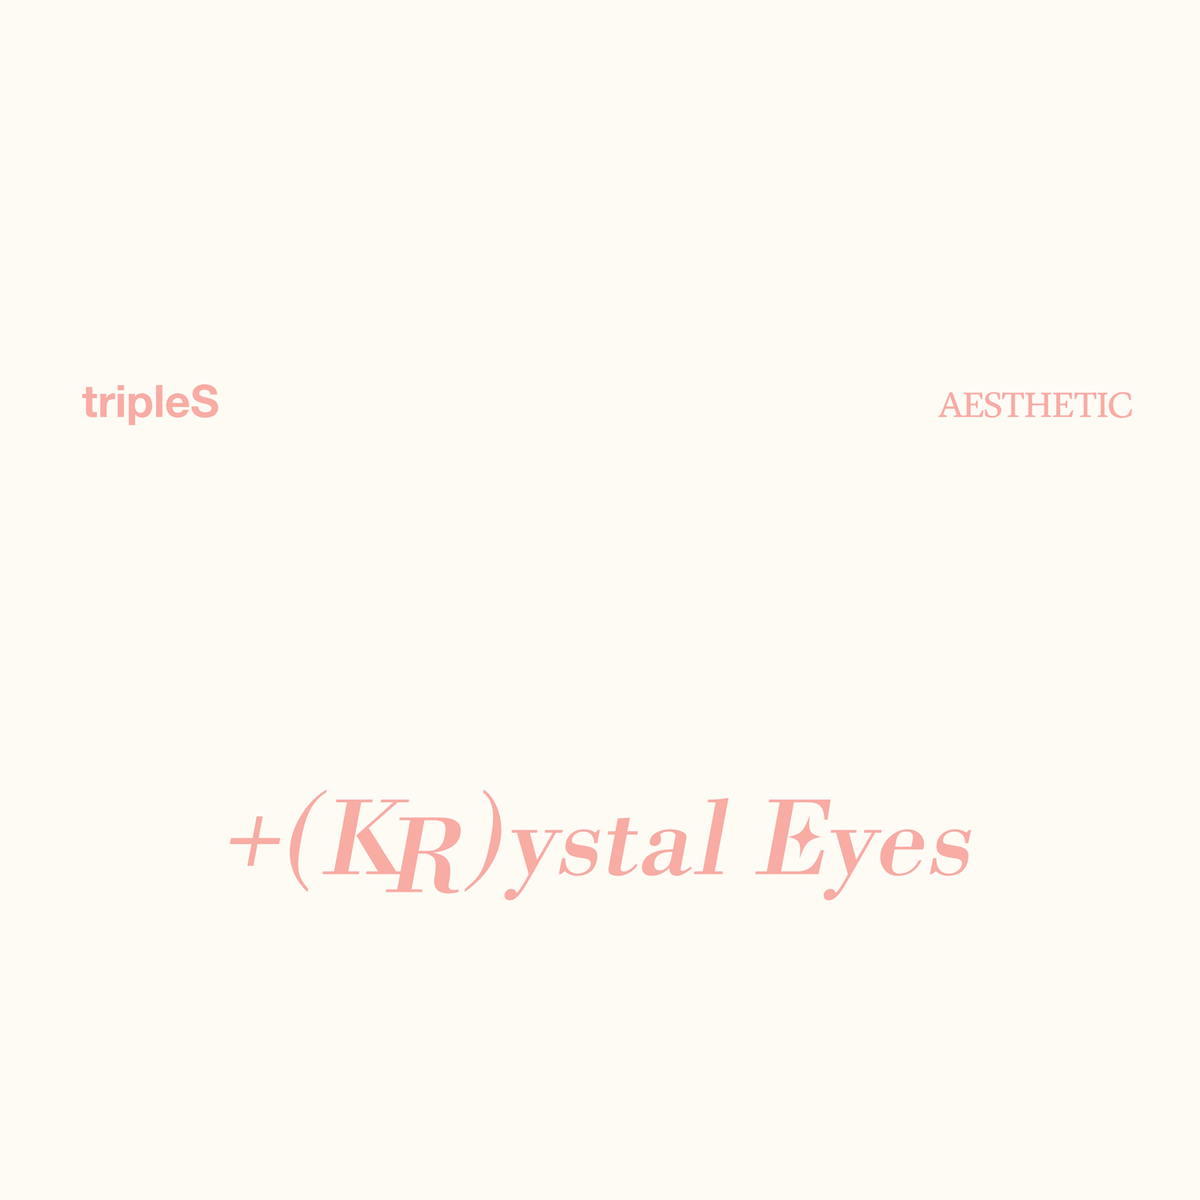 tripleS Mini Album - +(KR)ystal Eyes [AESTHETIC] – Choice Music LA